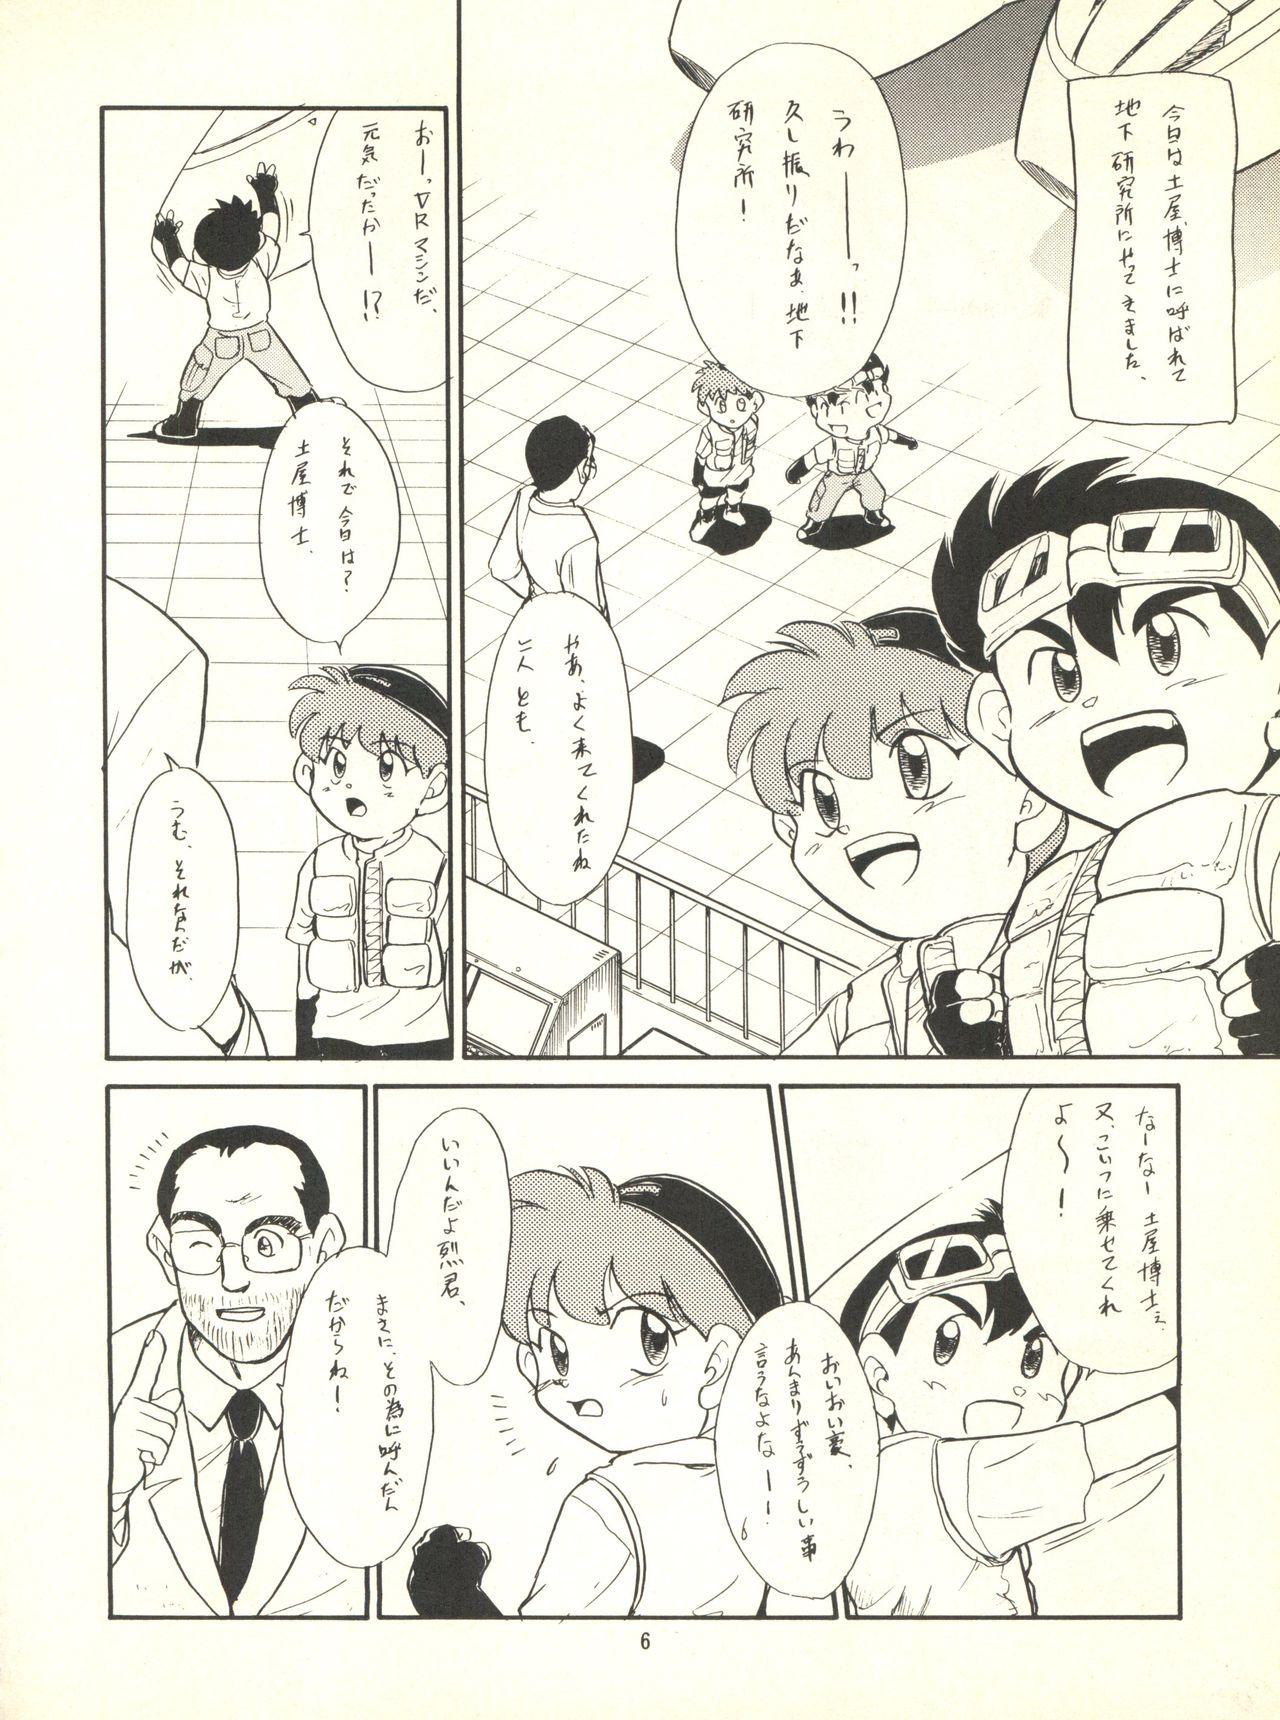 Ballbusting Nana-chan Kikiippatsu - Bakusou kyoudai lets and go Muscular - Page 6